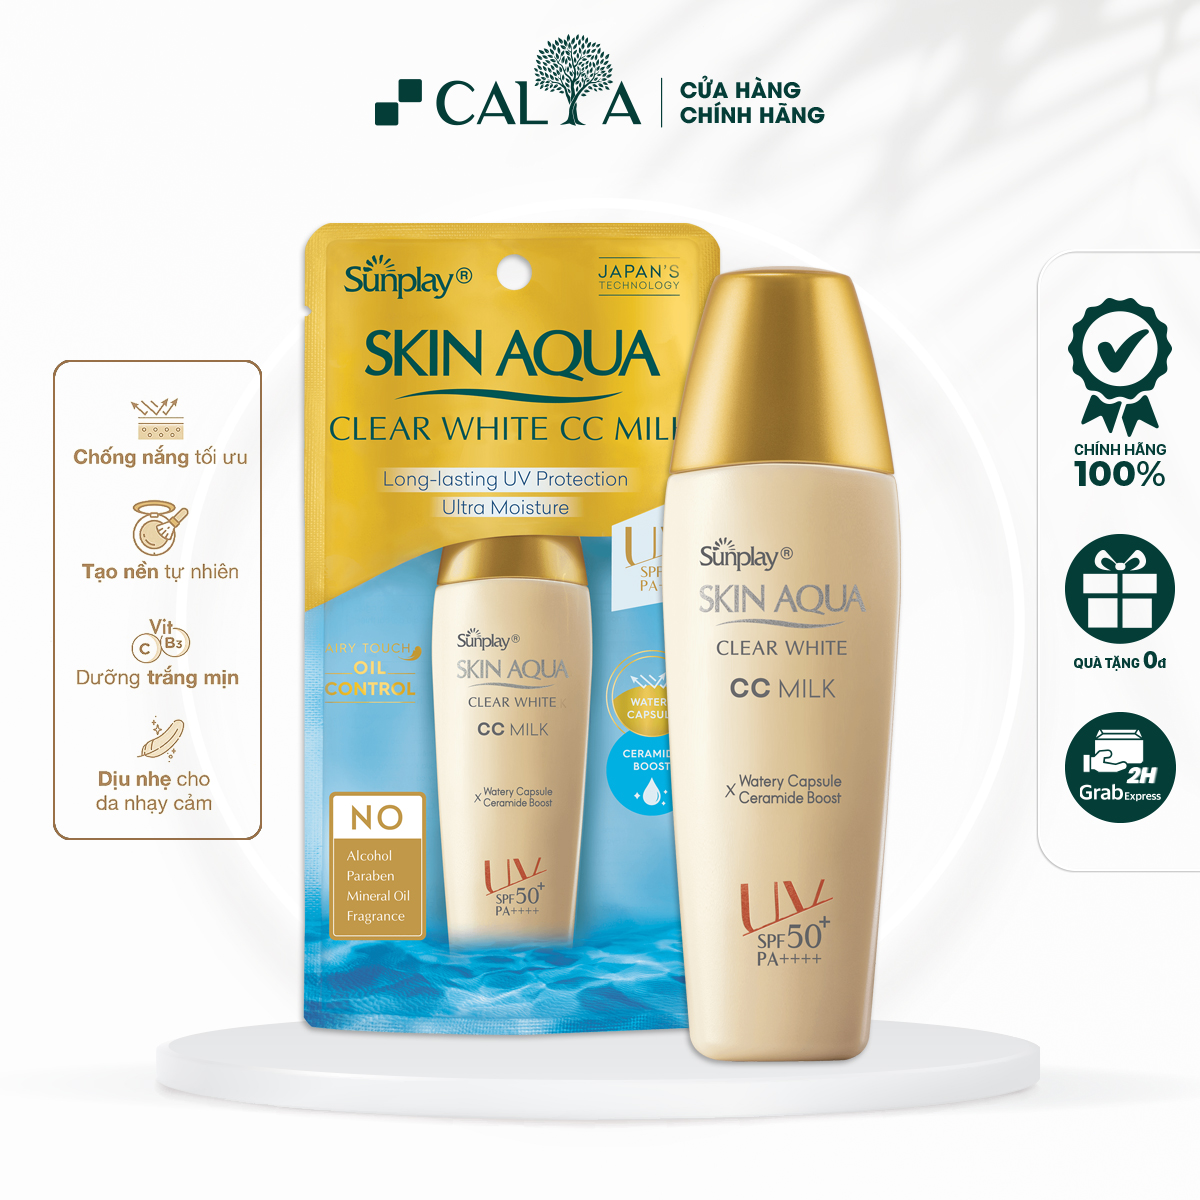 Kem Chống Nắng Sunplay 3 in 1 Tạo Nền Tự Nhiên Giúp Da Trắng Mịn - Sunplay Skin Aqua Clear White CC Milk 25g